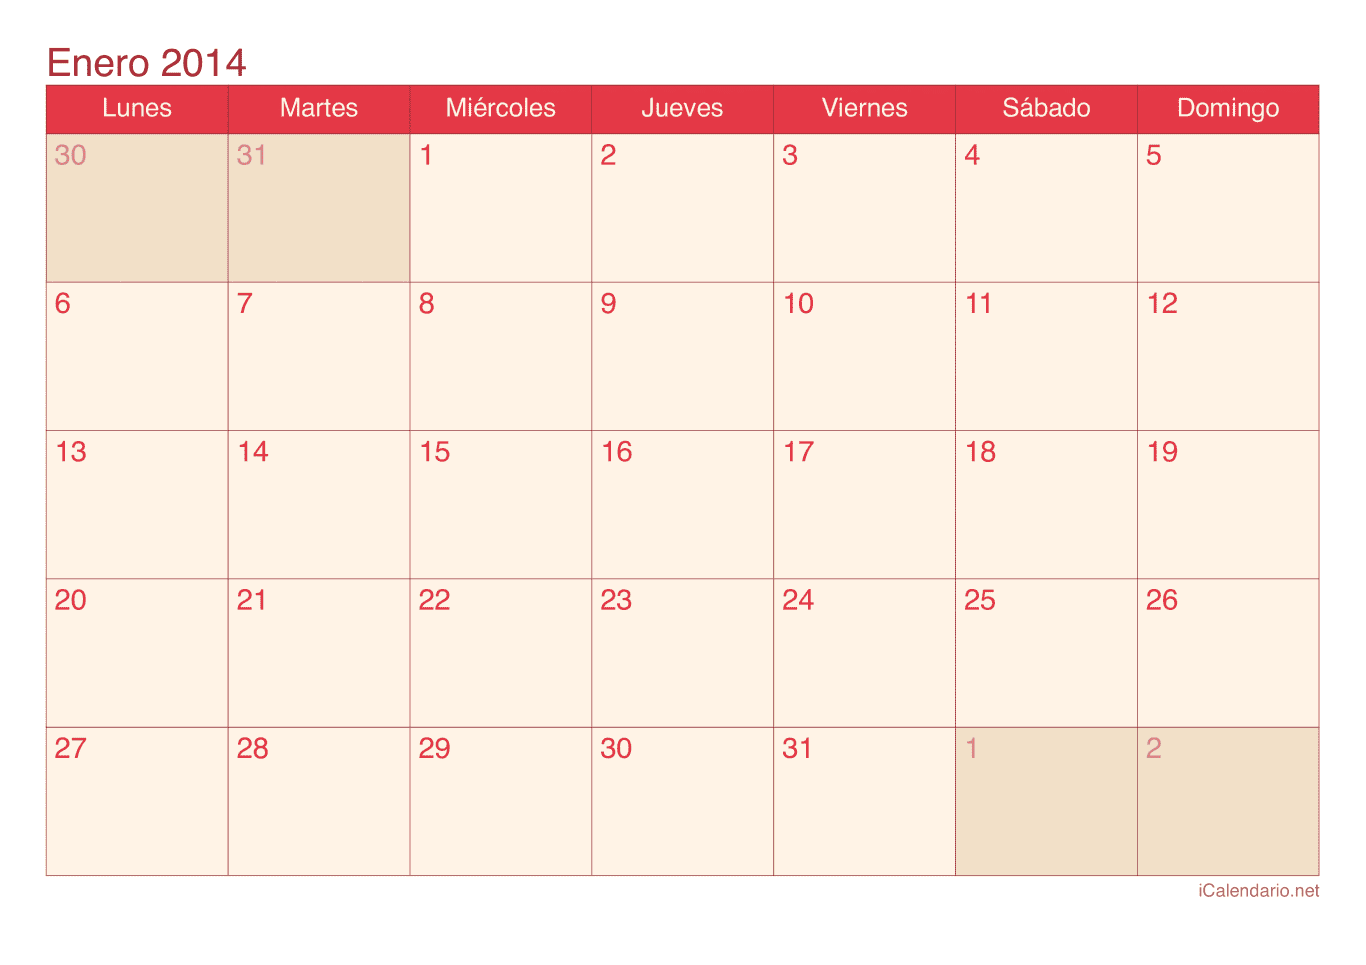 Calendario de enero 2014 - Cherry